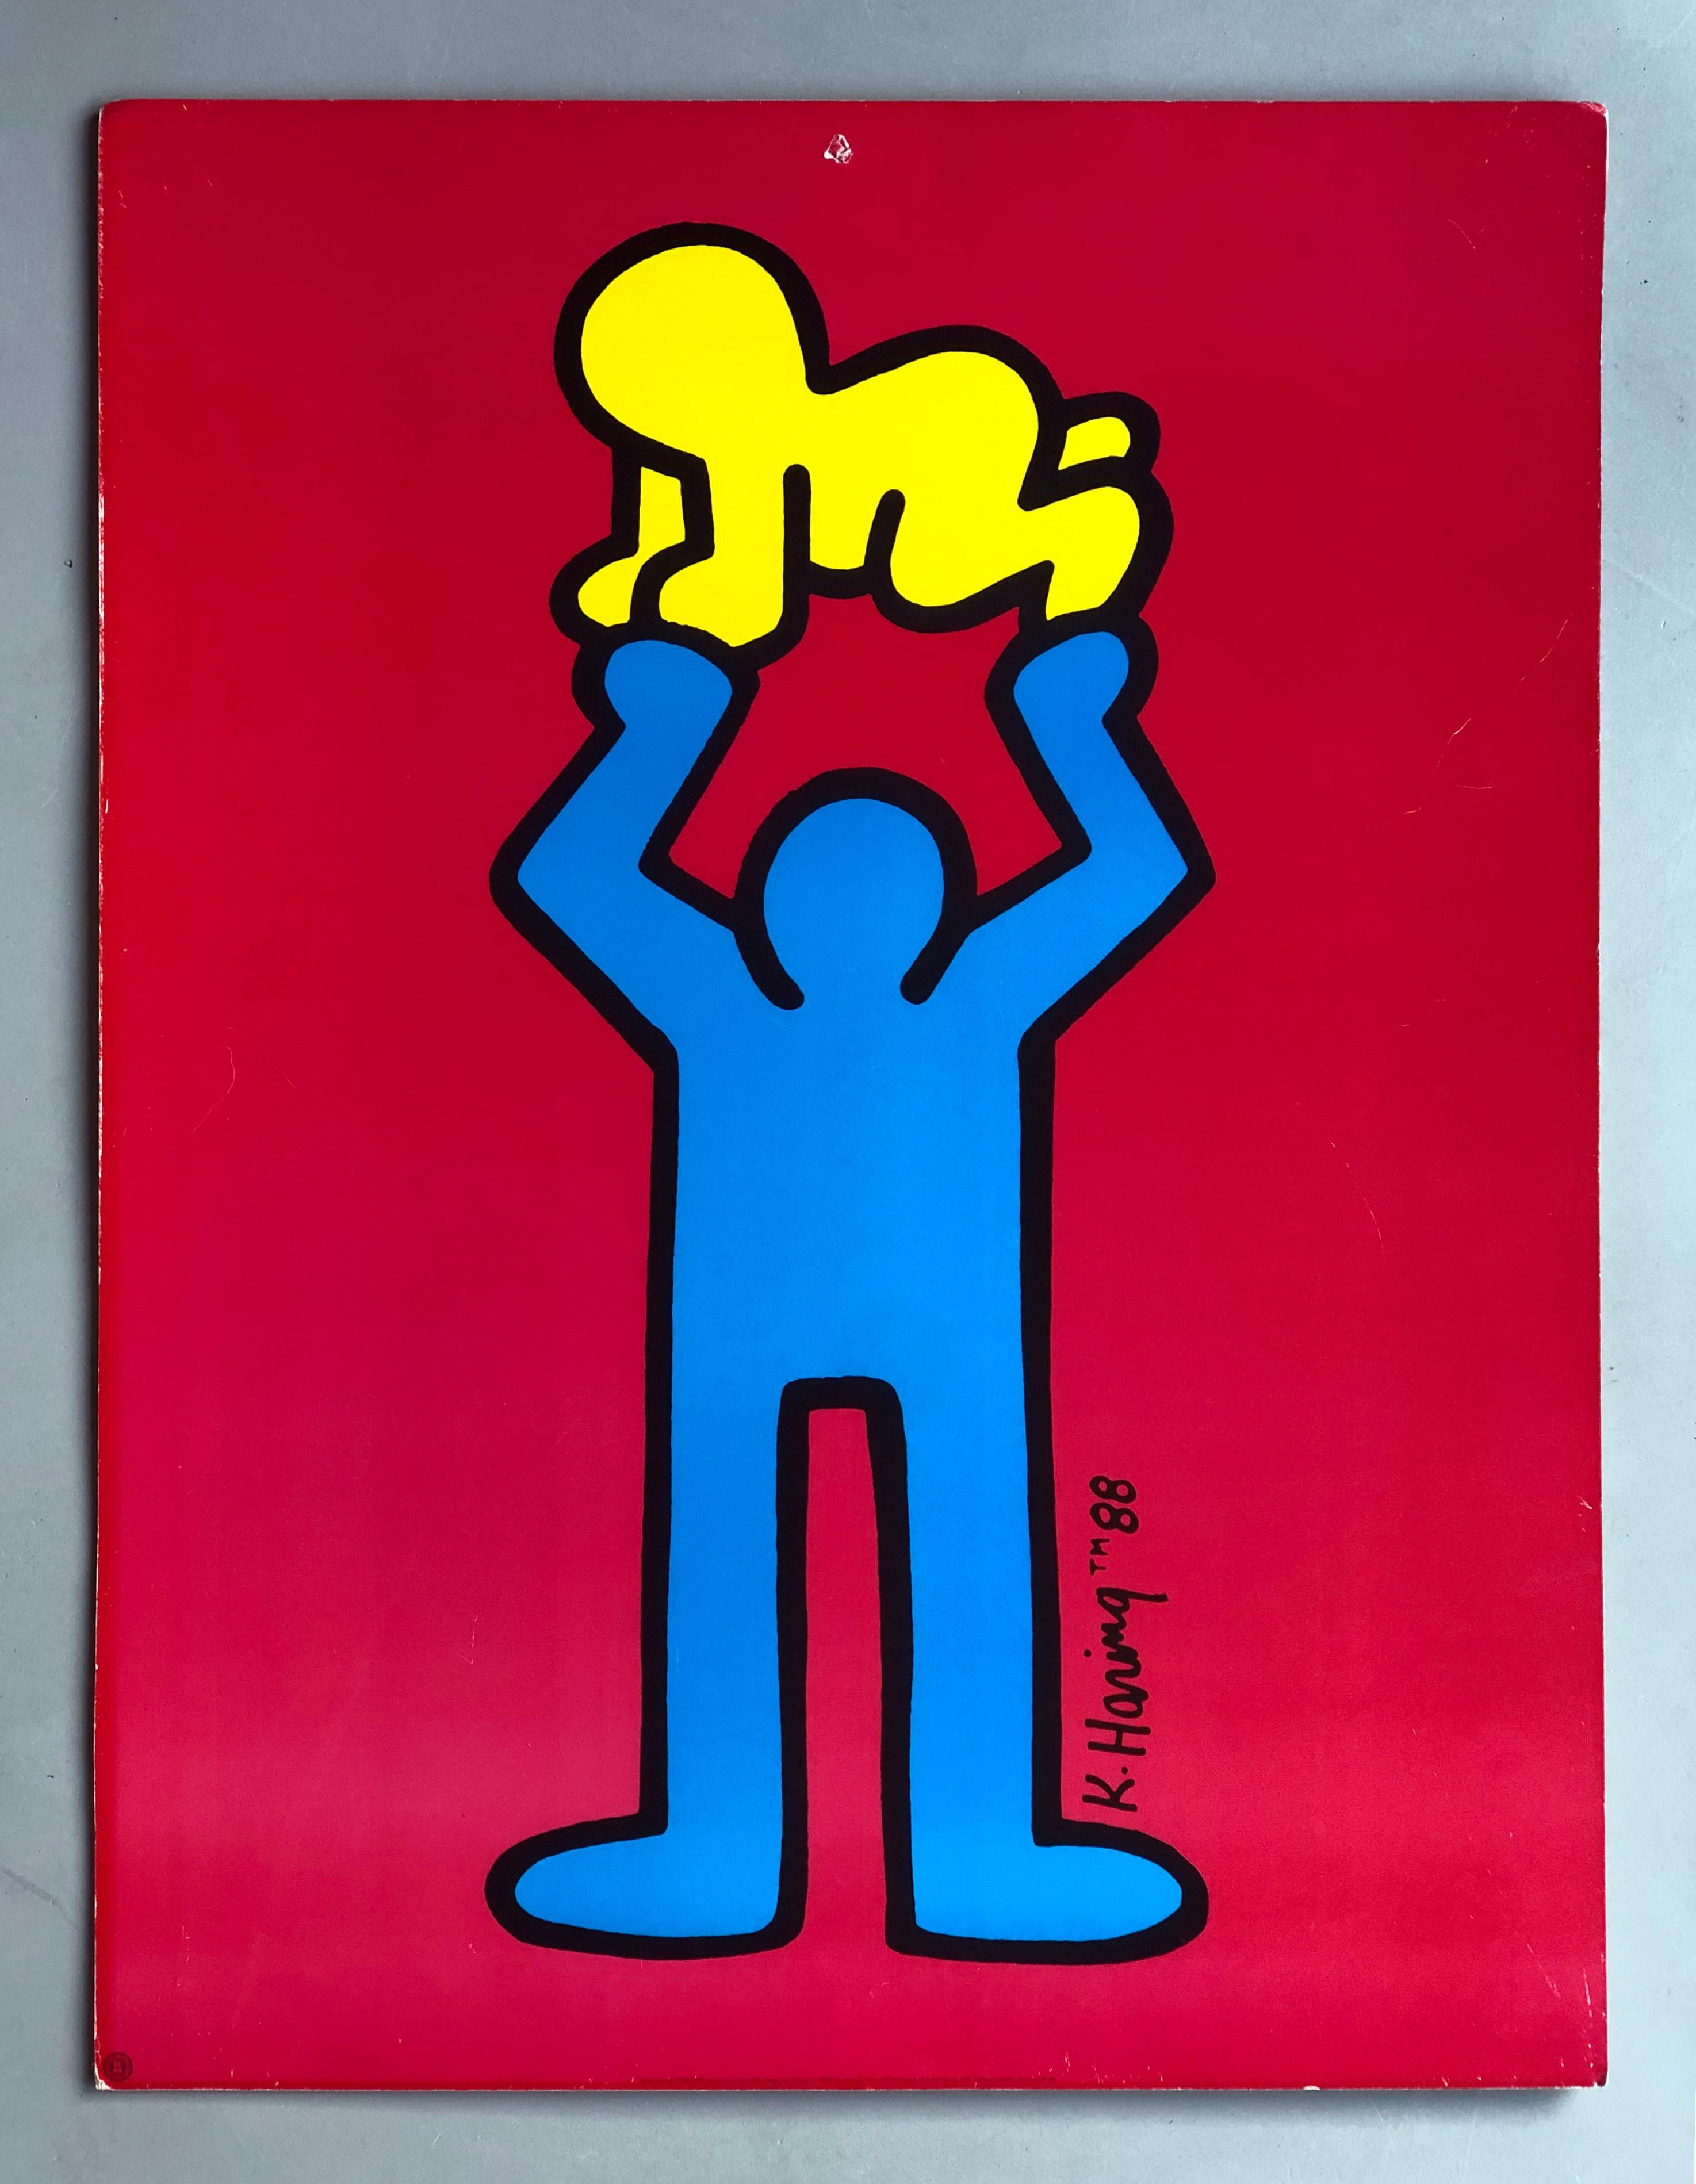 Keith Haring 1991 - Homme tenant un bébé radieux - Impression Pop Art sur carton épais

Cette impressionnante lithographie présente l'œuvre de Keith Haring 